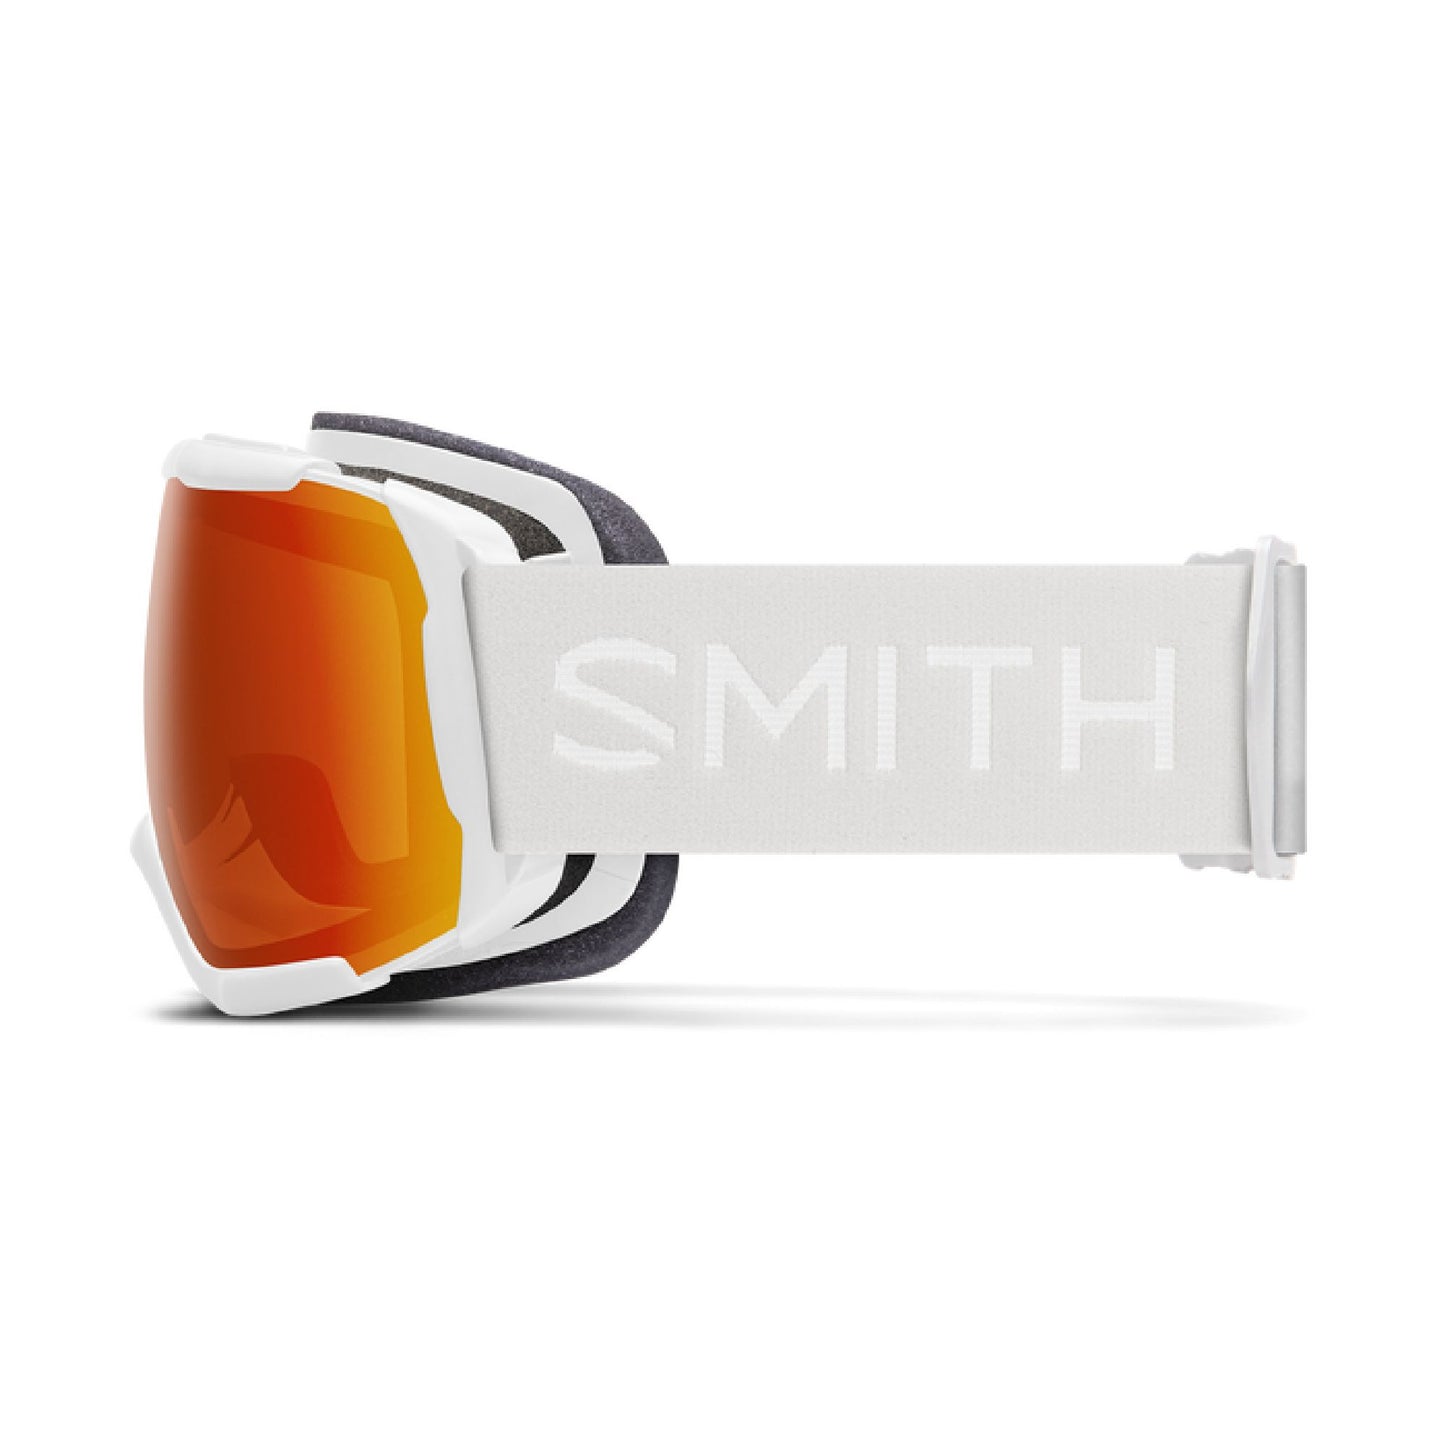 Smith Showcase OTG Snow Goggle White Vapor ChromaPop Everyday Red Mirror - Smith Snow Goggles